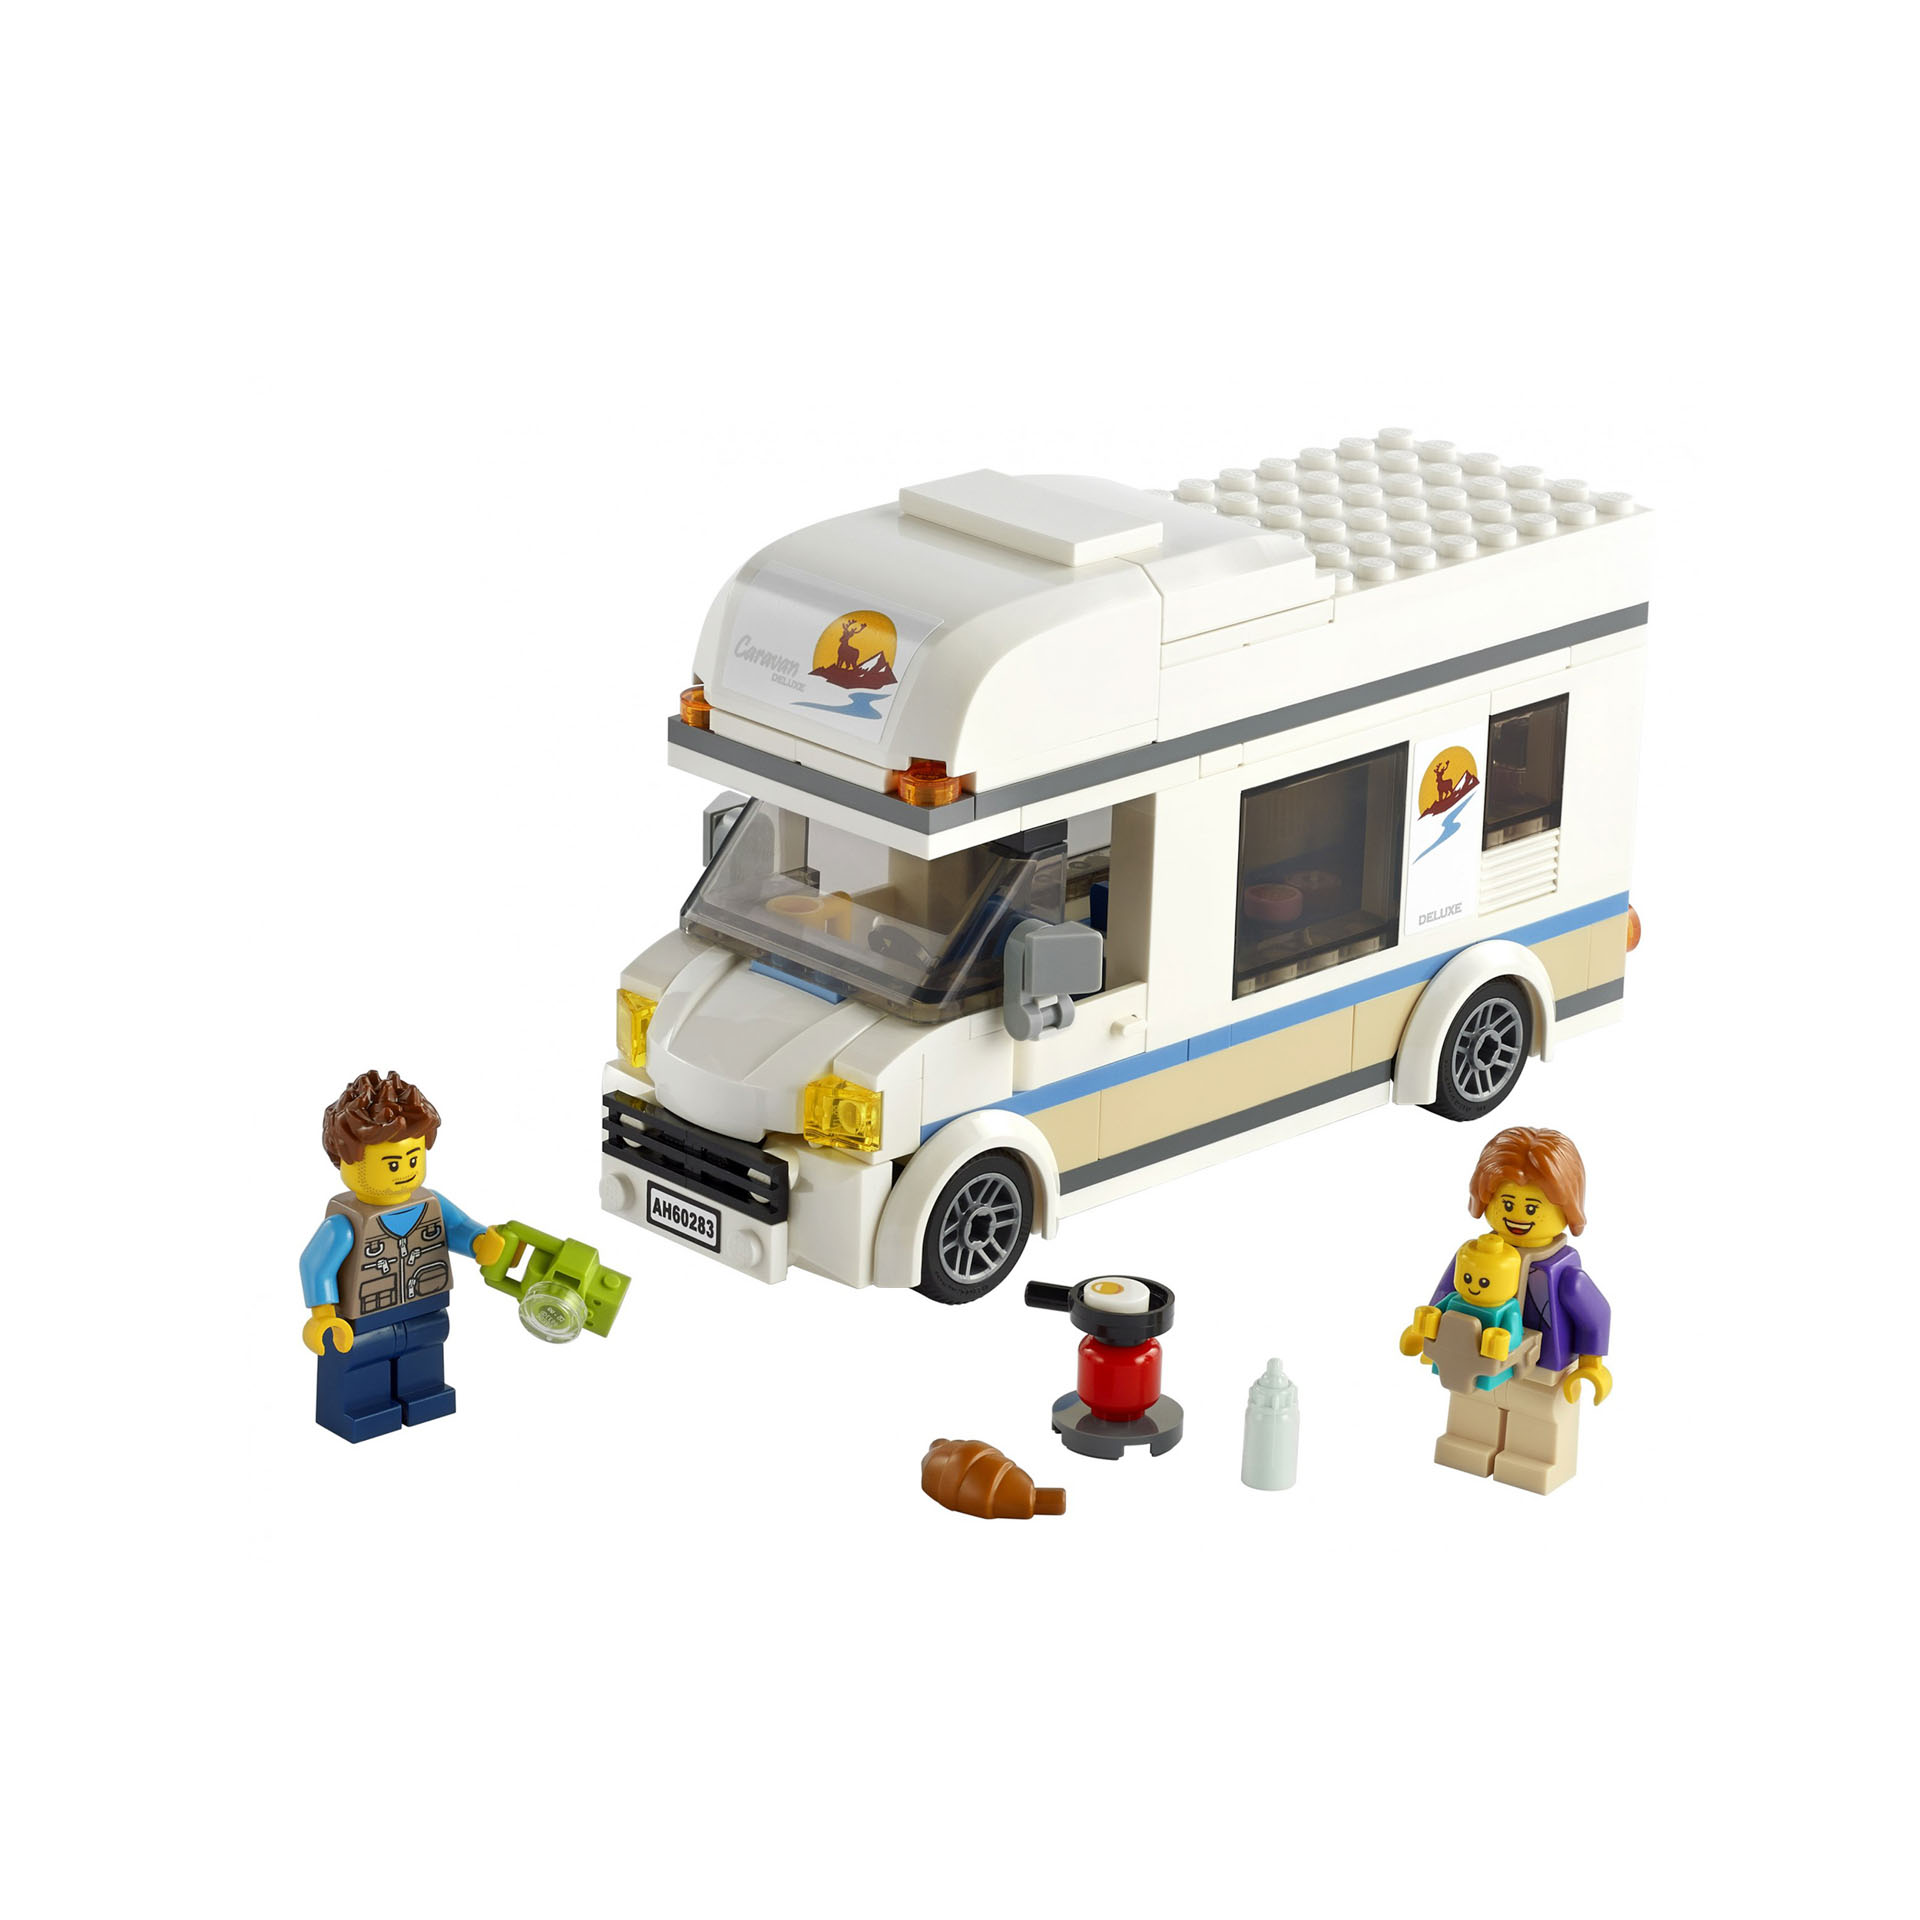 LEGO City Super Veicoli Camper delle Vacanze, Kit di Gioco con Camper, Giocattol 60283, , large